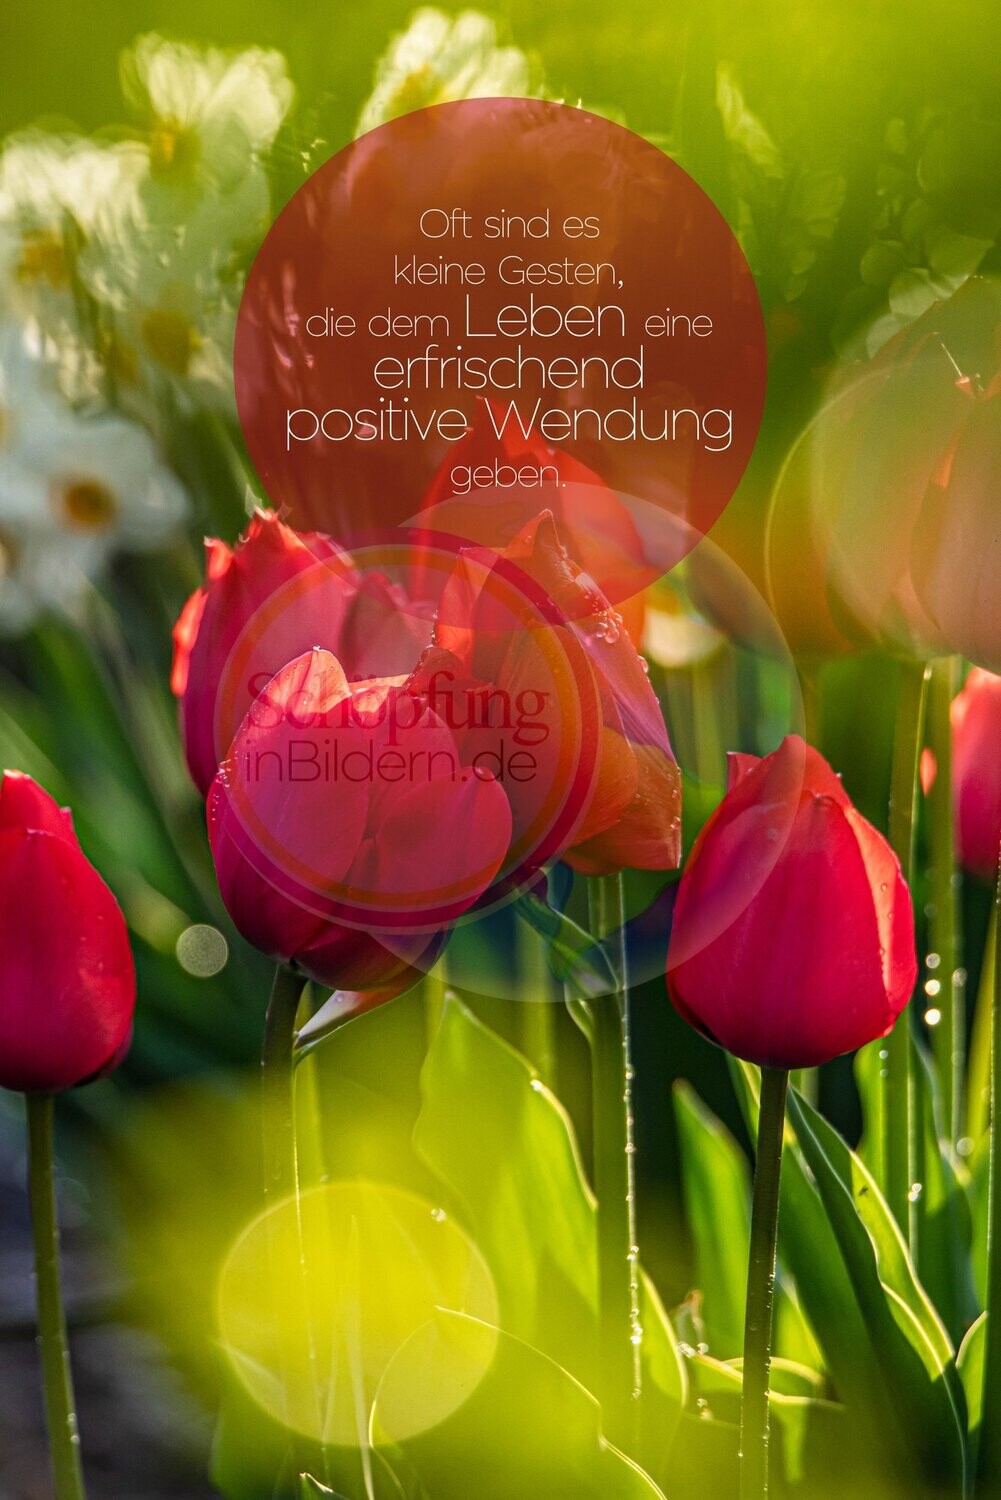 Oft sind es die kleinen Gesten, die dem Leben eine erfrischend positive Wendung geben! - hochauflösendes Frühlings-Tulpen-Bild mit Spruch zum Download